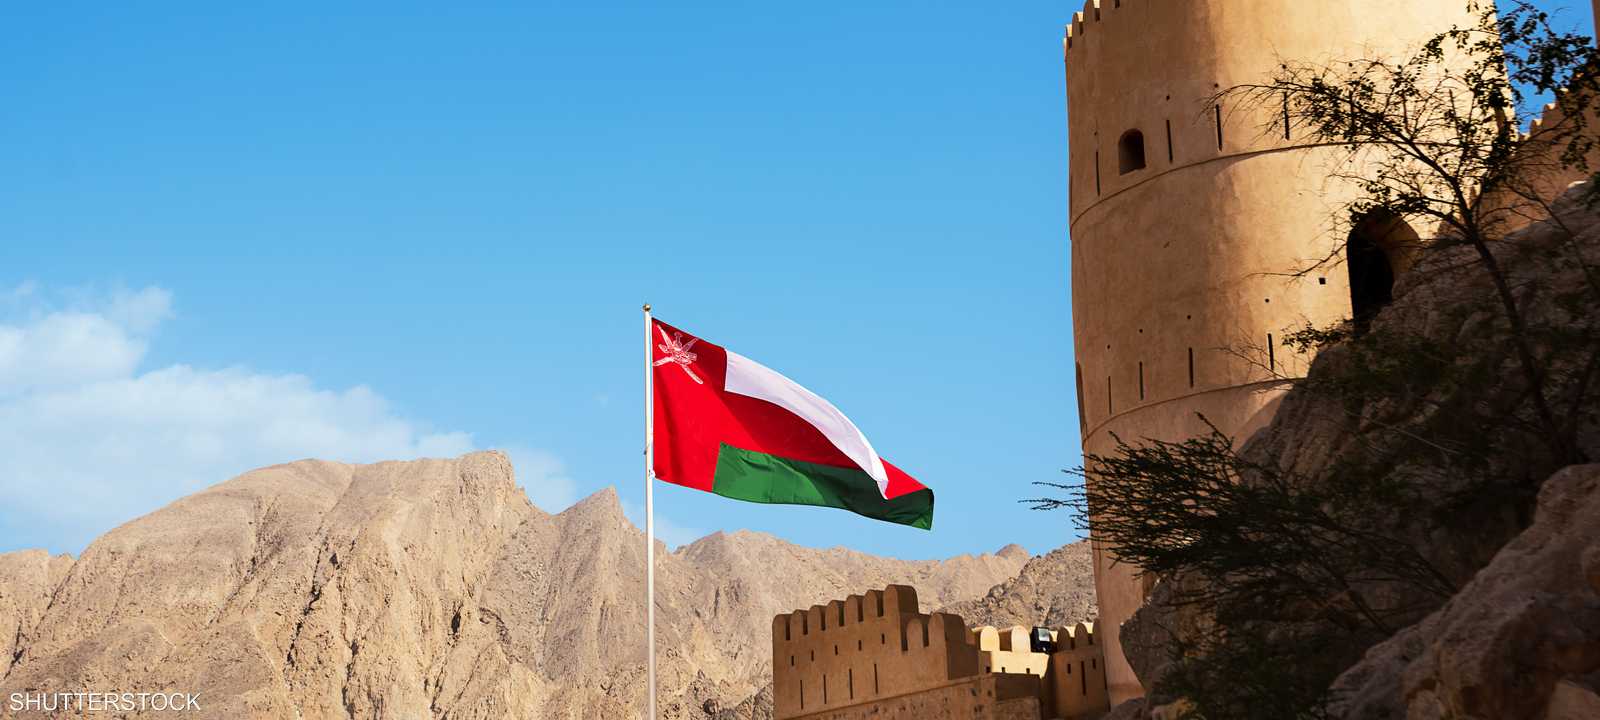 سلطنة عمان